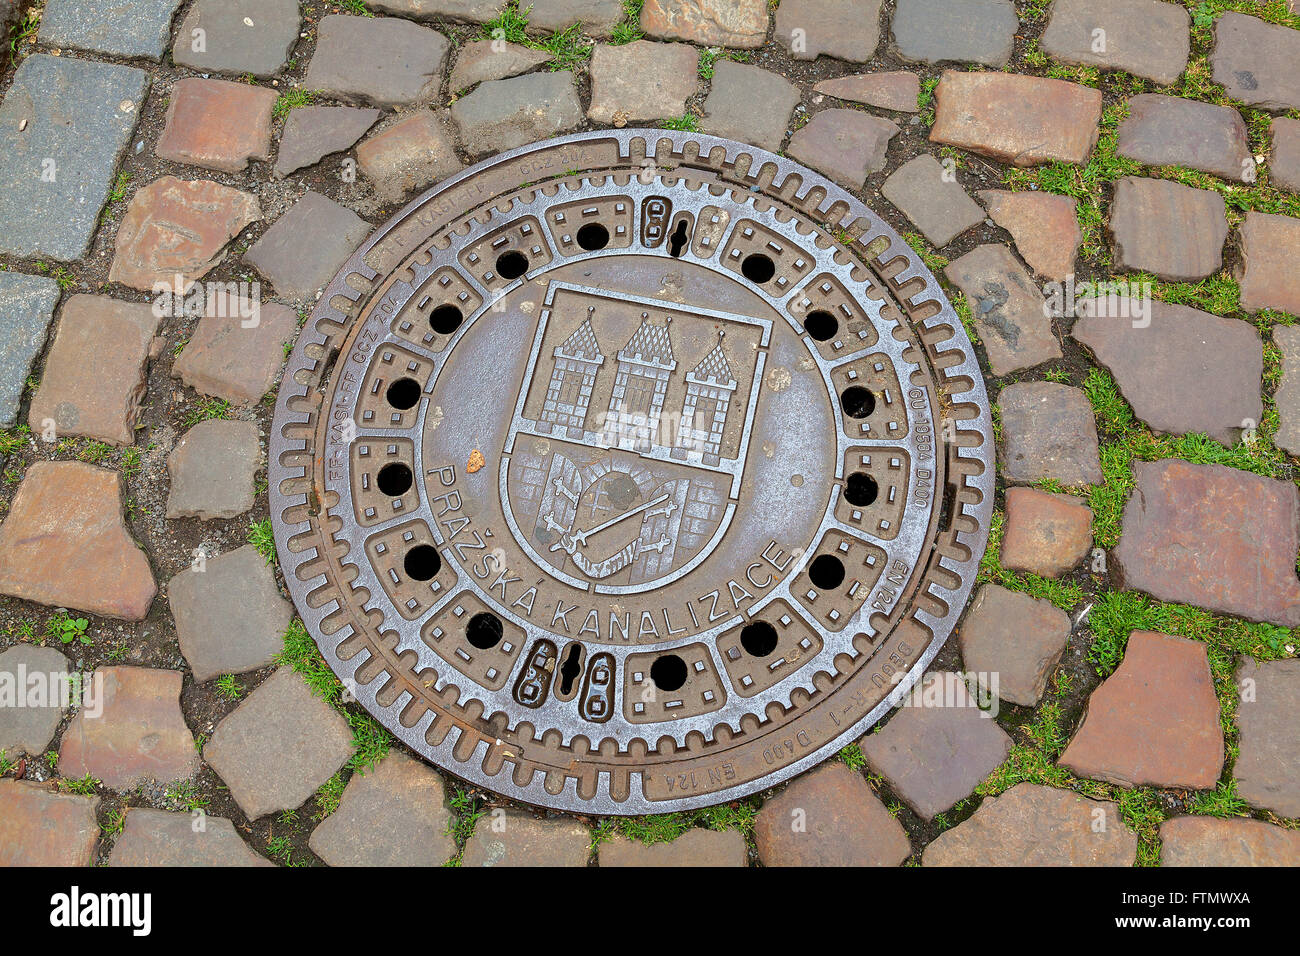 Decorative metal drain cover in Prague, Czech Republic Stock Photo